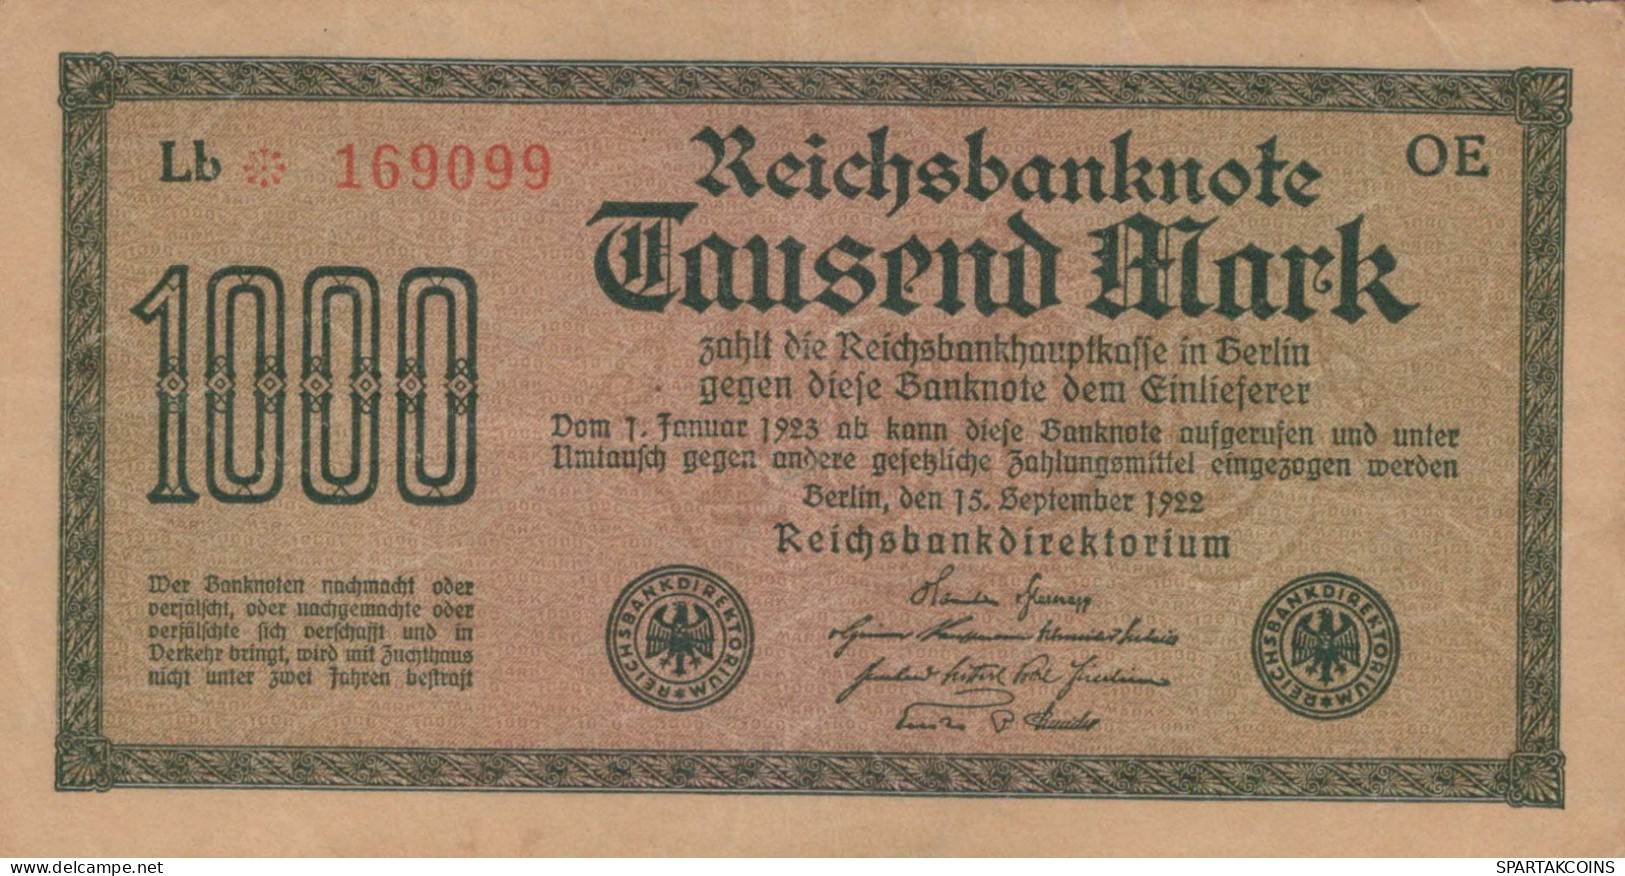 1000 MARK 1922 Stadt BERLIN DEUTSCHLAND Papiergeld Banknote #PL444 - [11] Local Banknote Issues